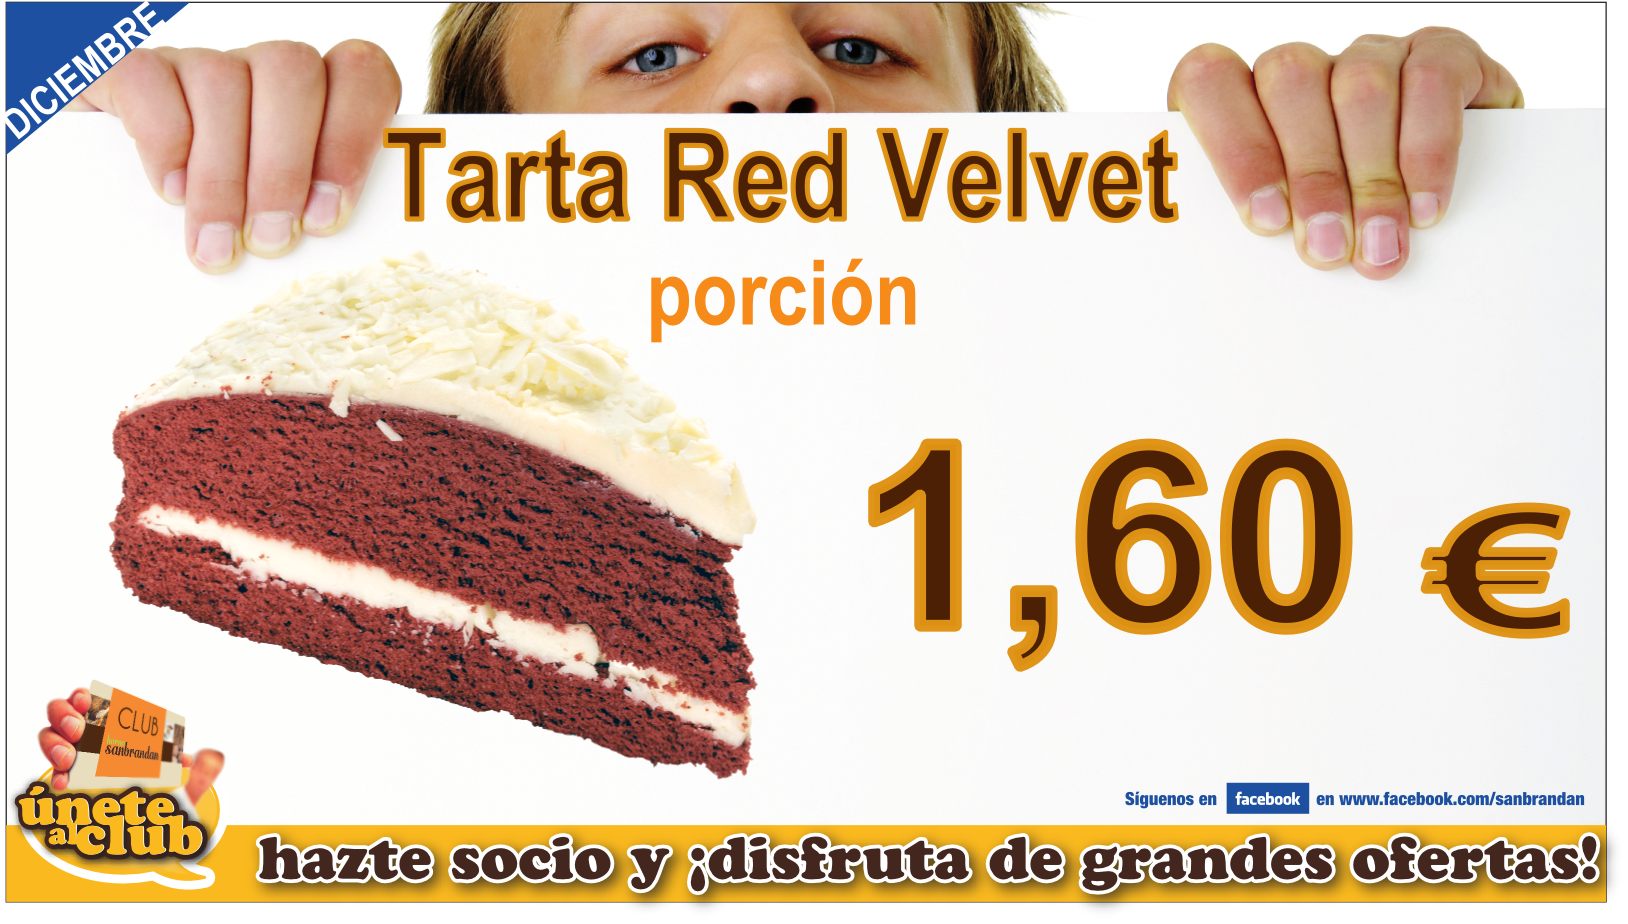 Porción de tarta red velvet 1,60 €